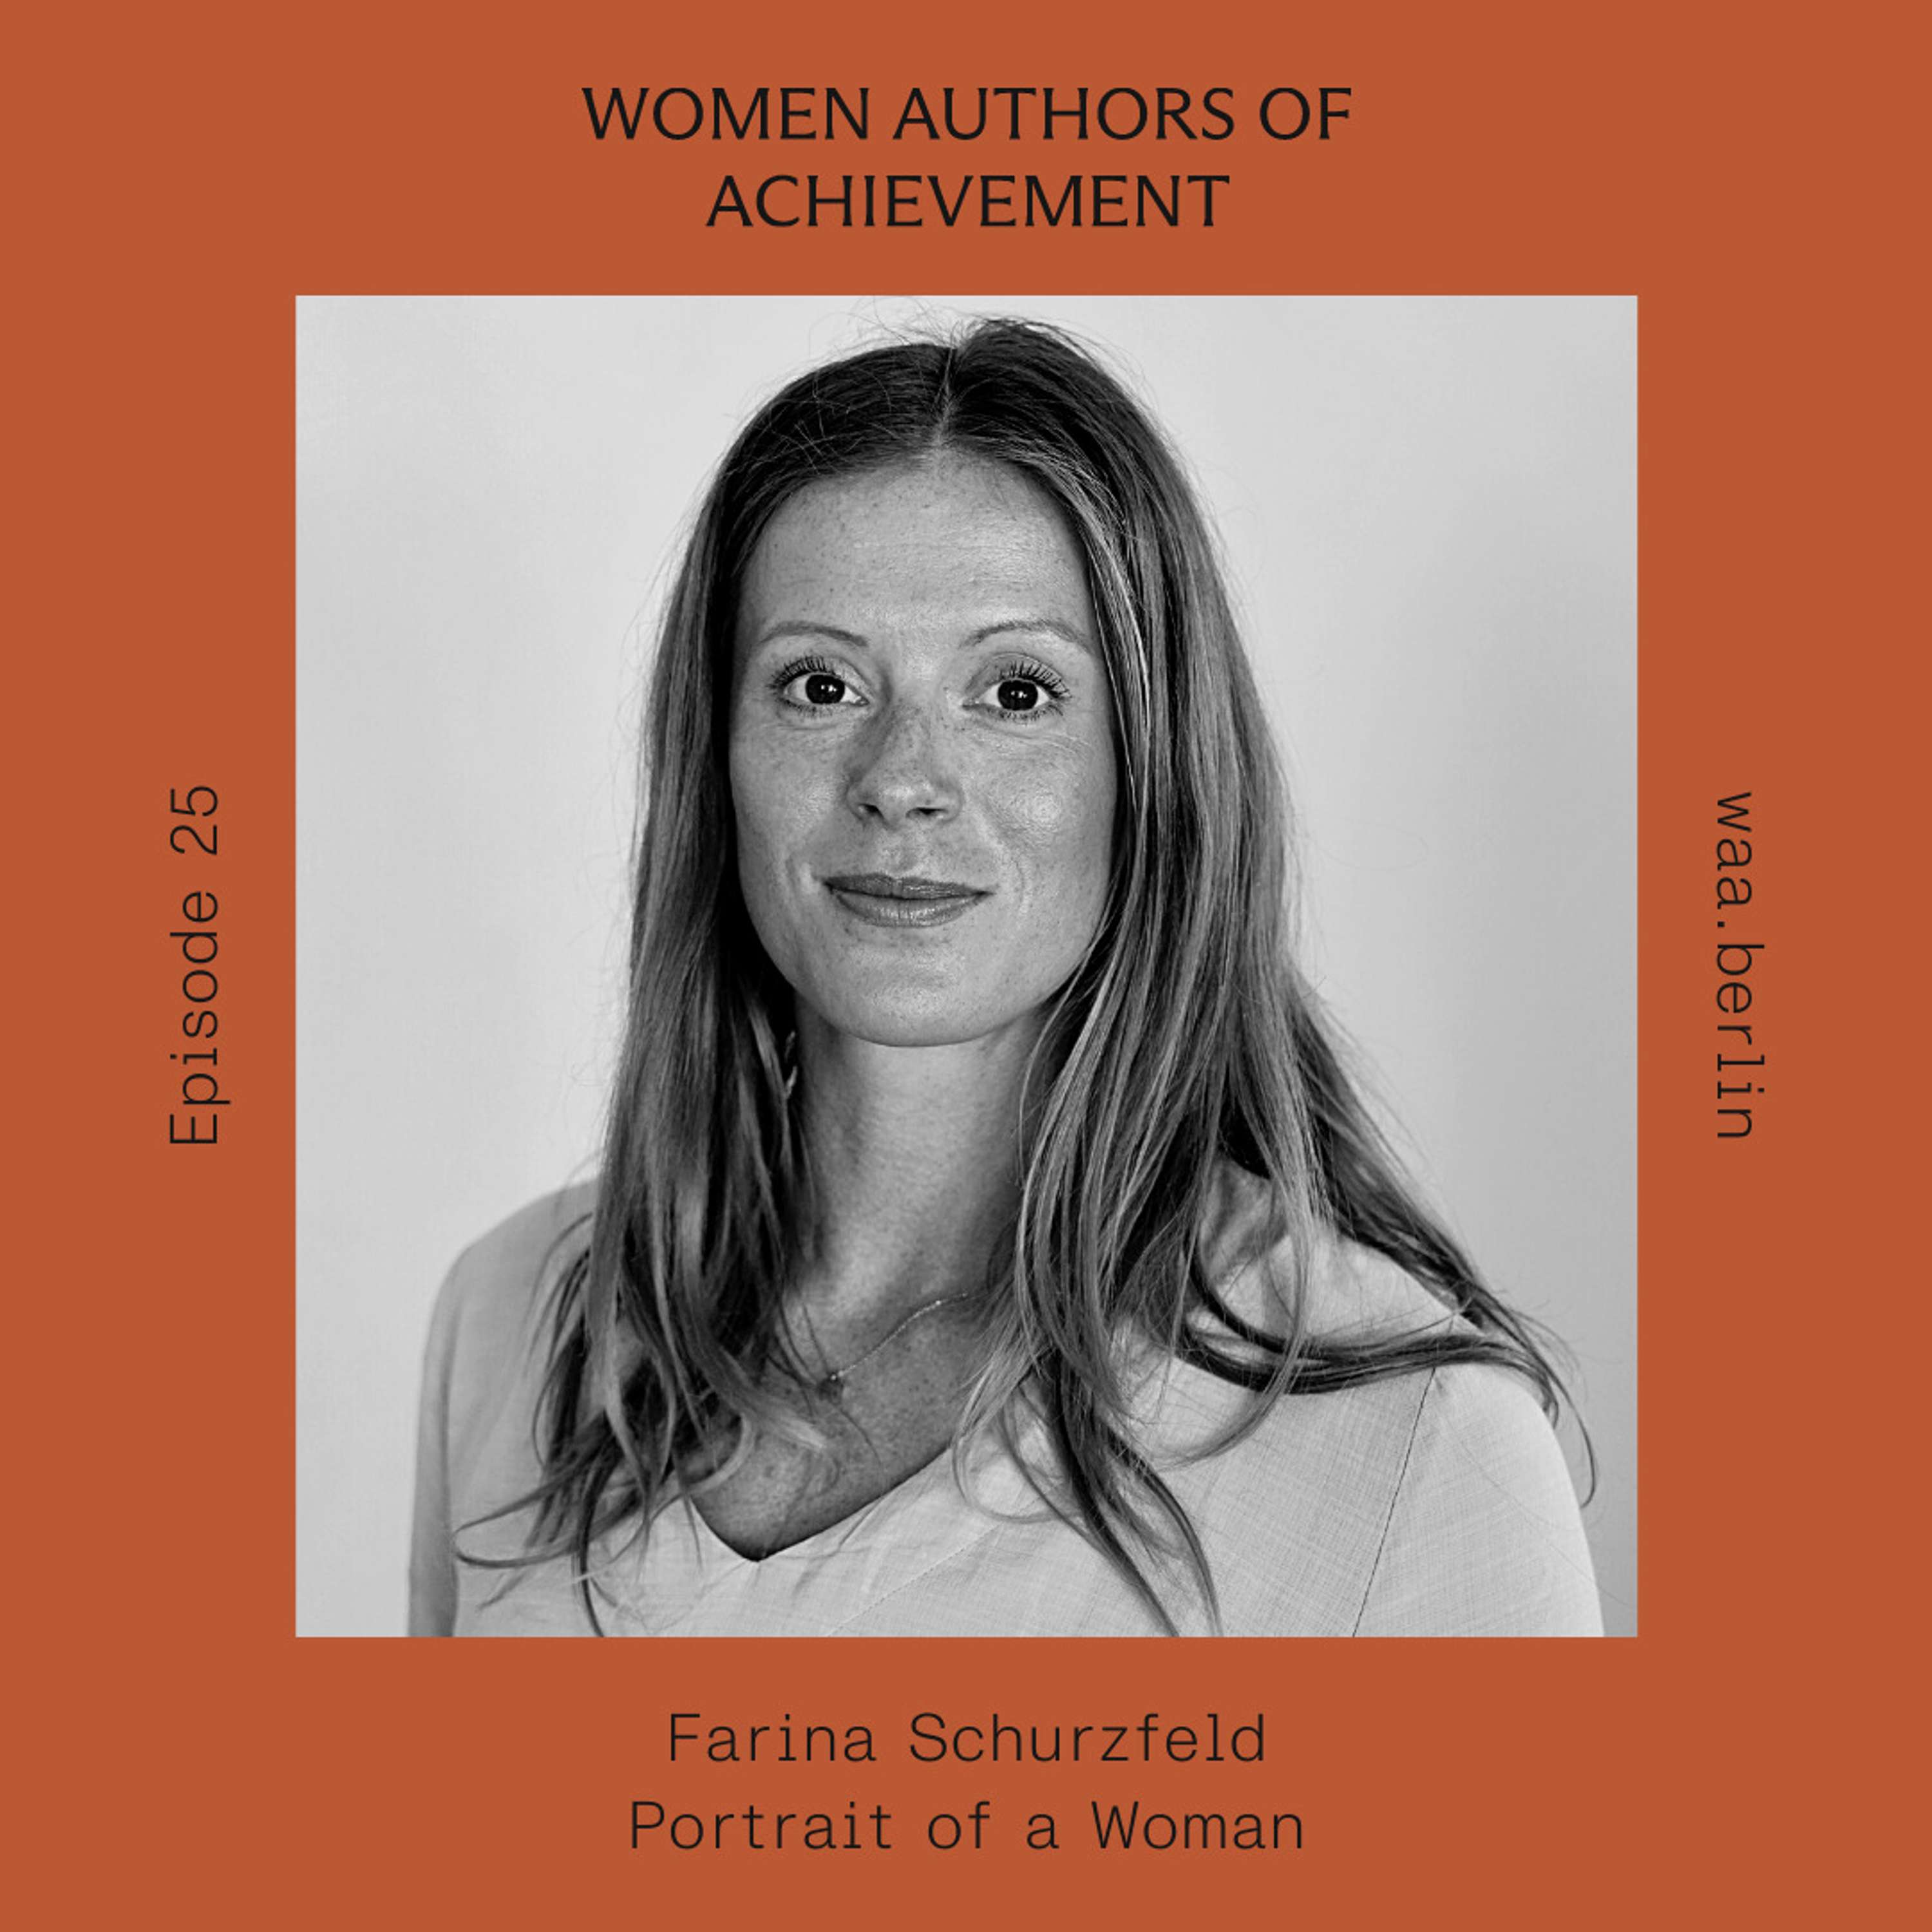 E.25 Making mental healthcare accessible with Farina Schurzfeld